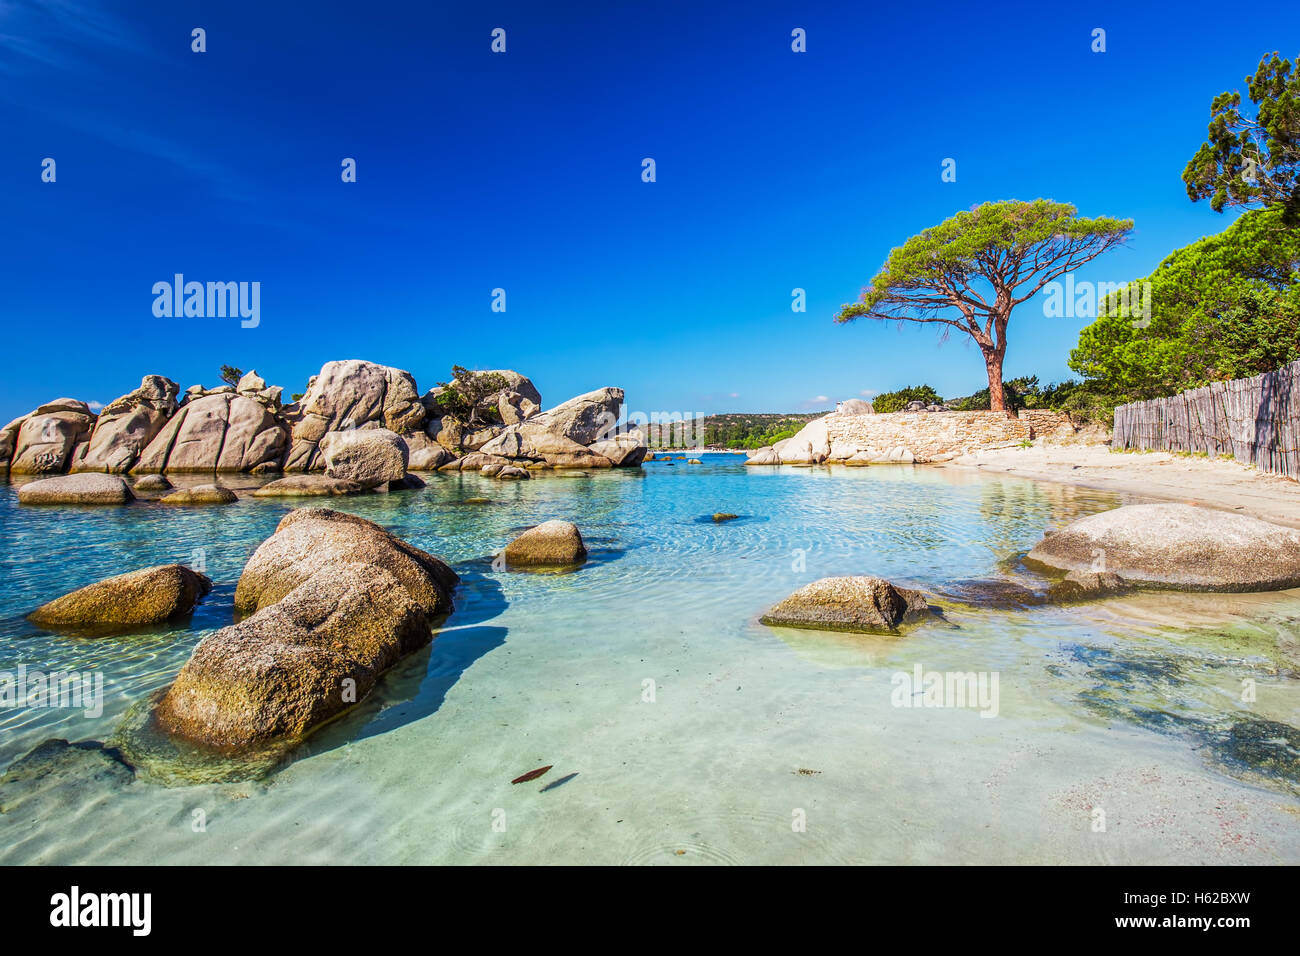 Pine Tree célèbre sur la plage de Palombaggia avec azure de l'eau claire et de sable sur la partie sud de la Corse, France Banque D'Images